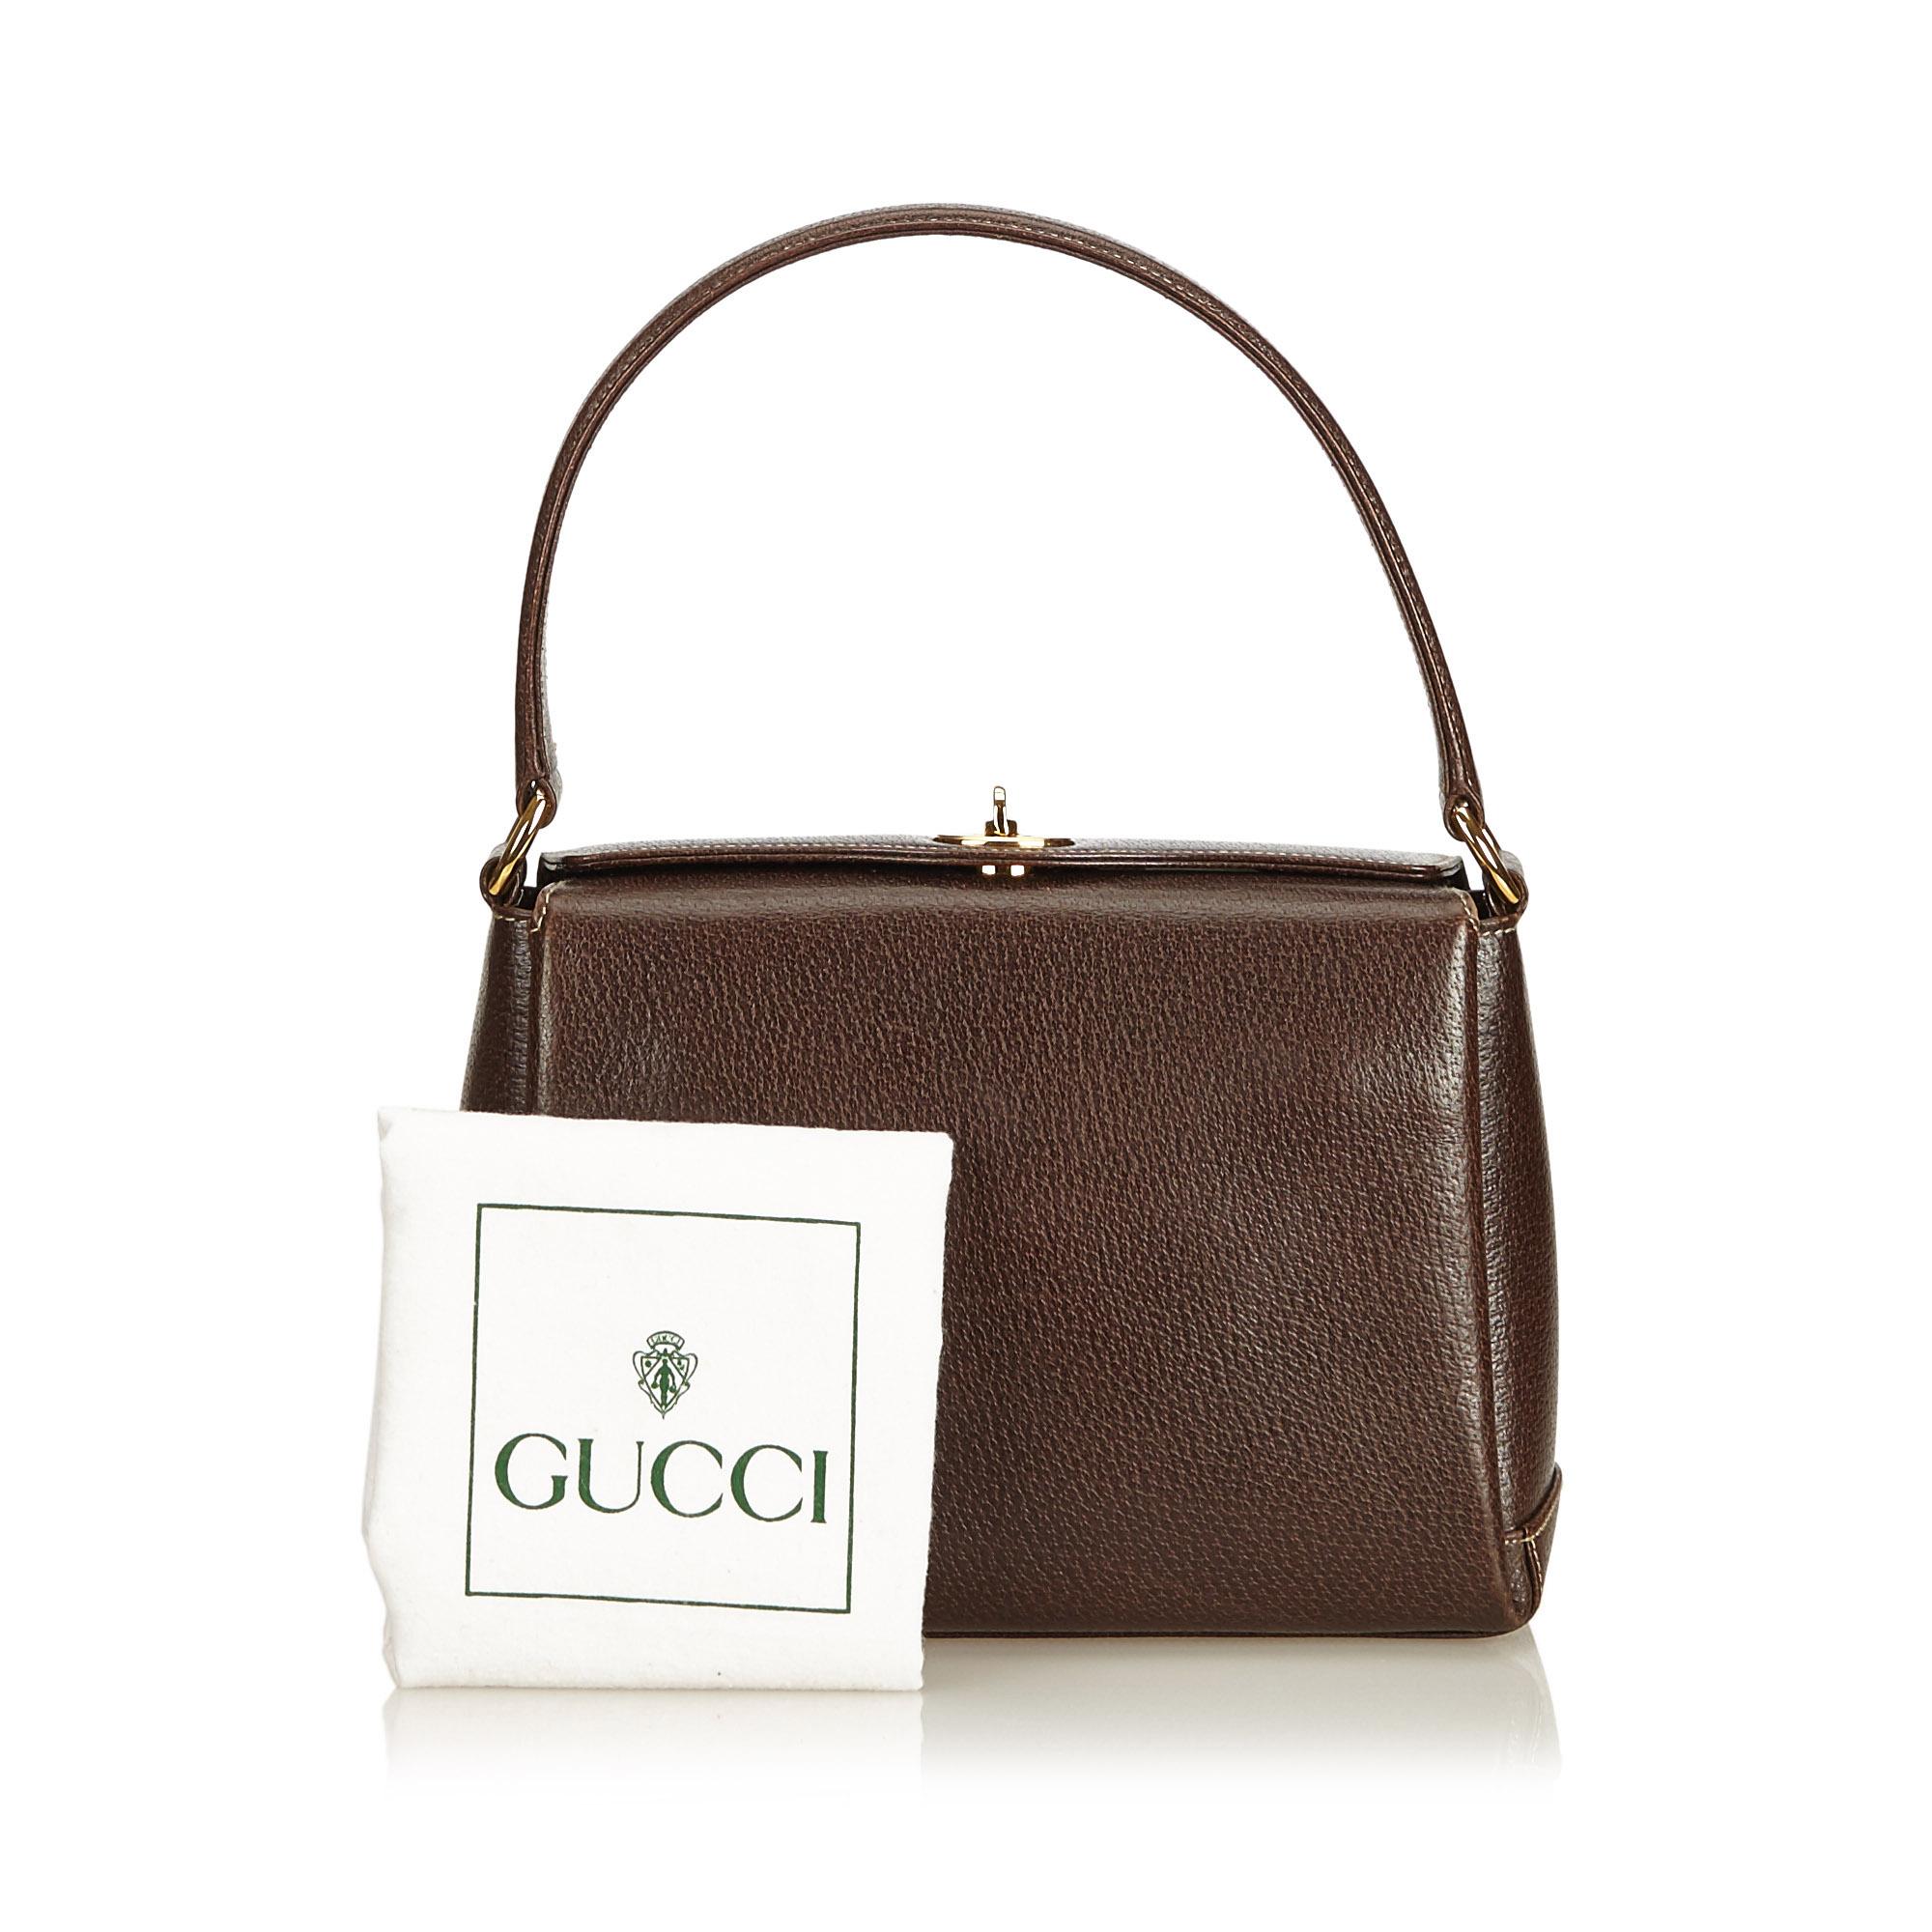 Gucci Brown Leather Handbag 5